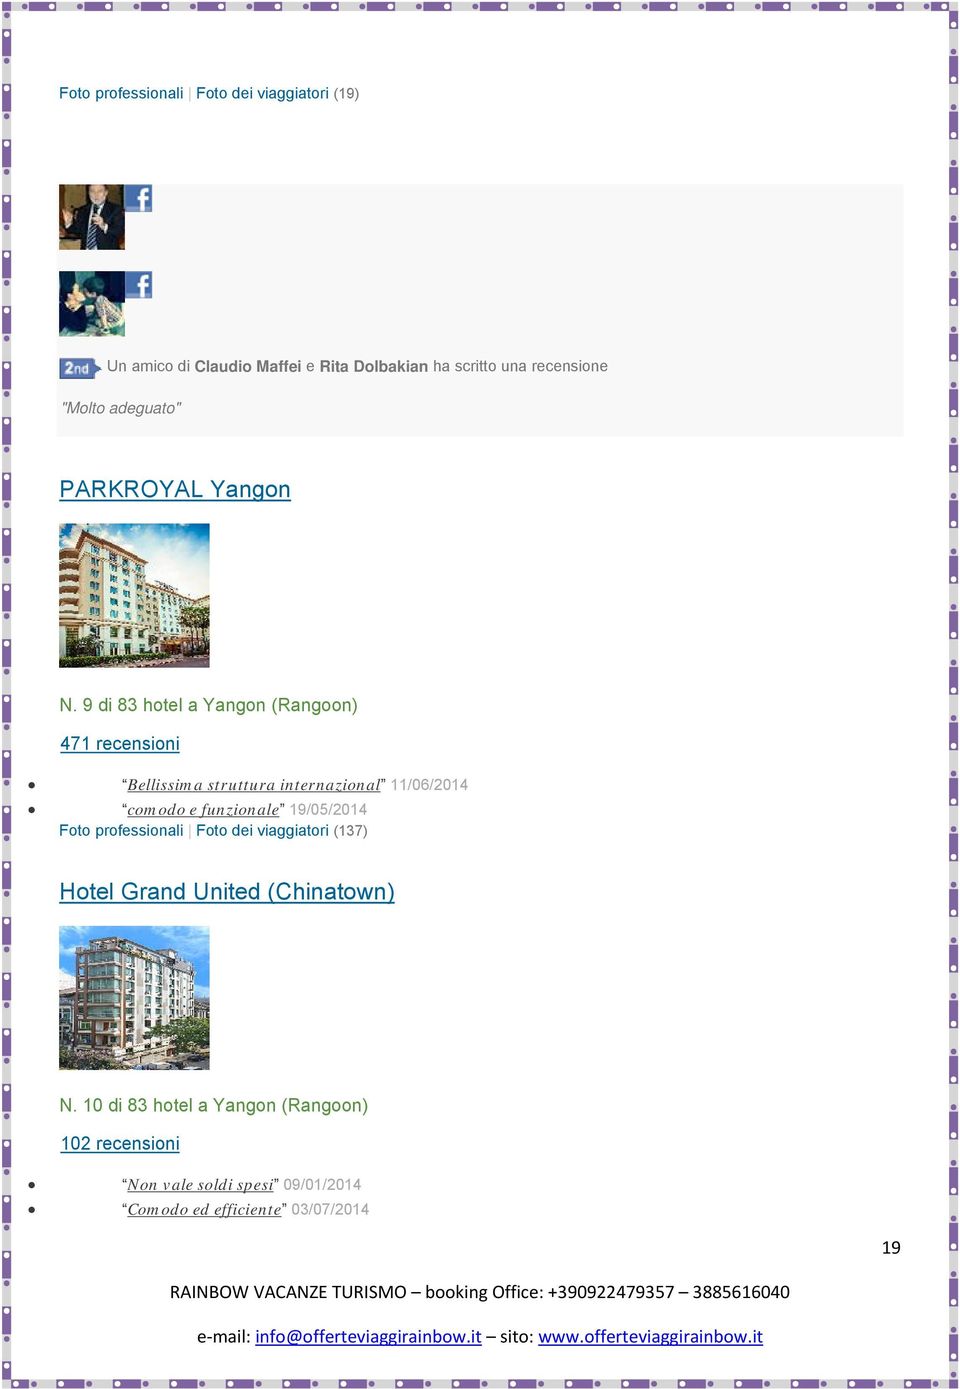 9 di 83 hotel a Yangon (Rangoon) 471 recensioni Bellissima struttura internazional 11/06/2014 comodo e funzionale